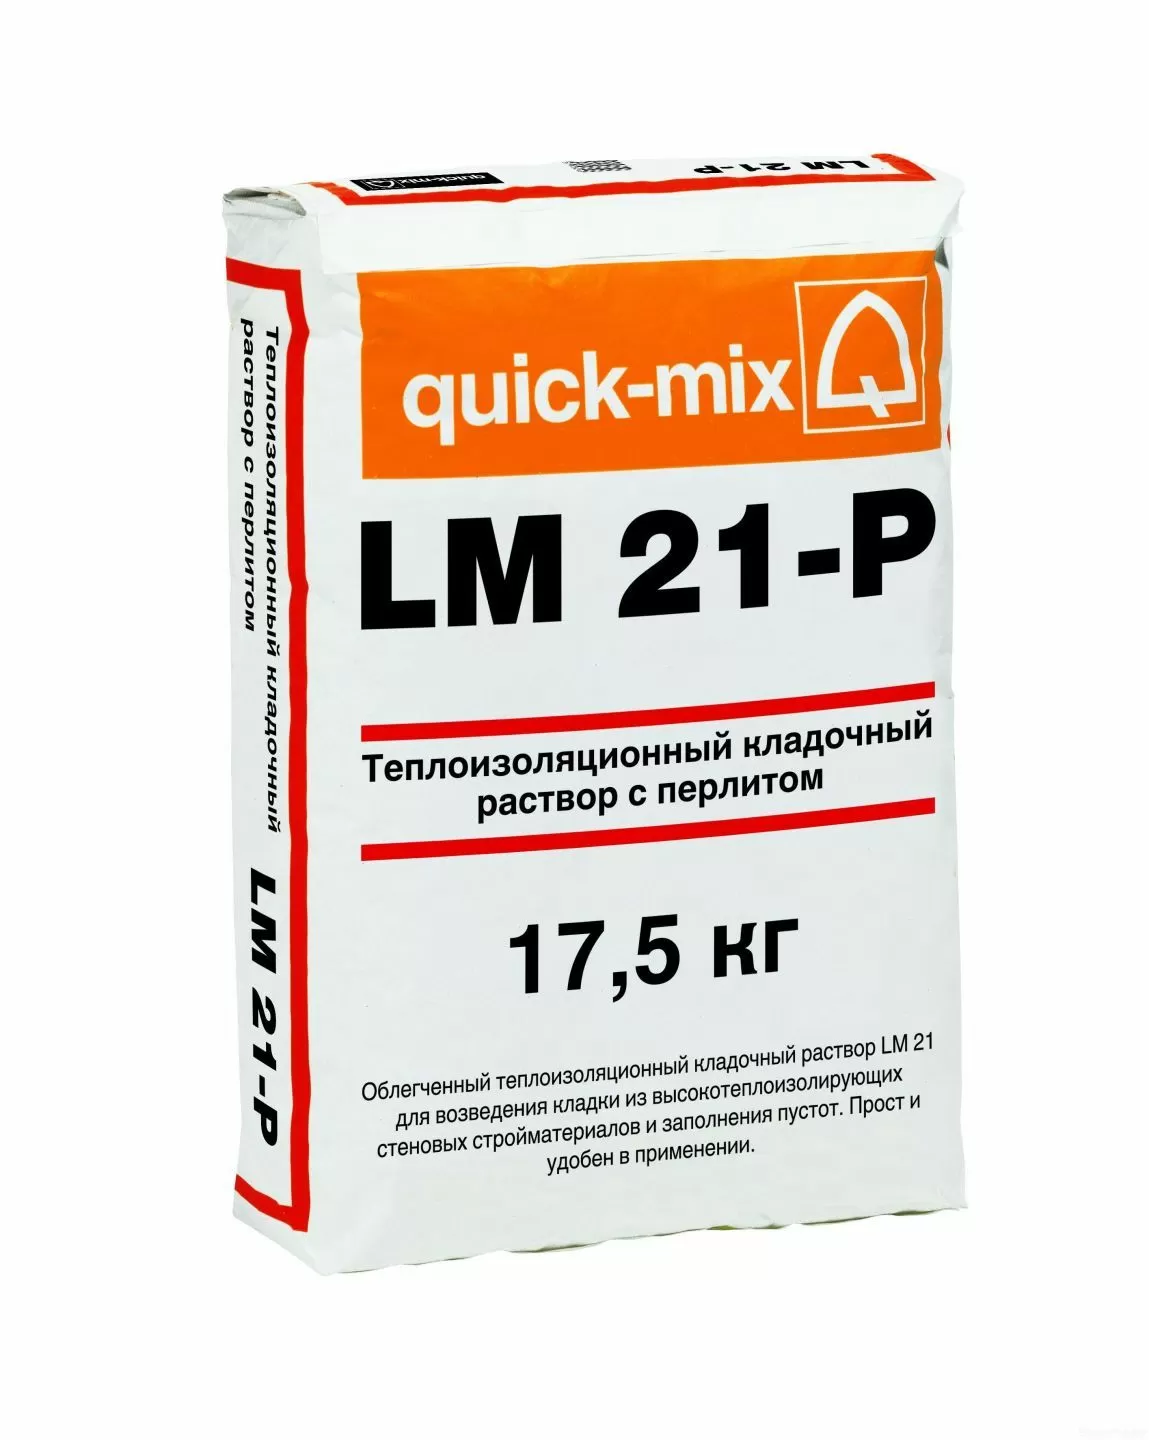 Тёплый кладочный раствор с пеностеклом quick-mix LM 21-P